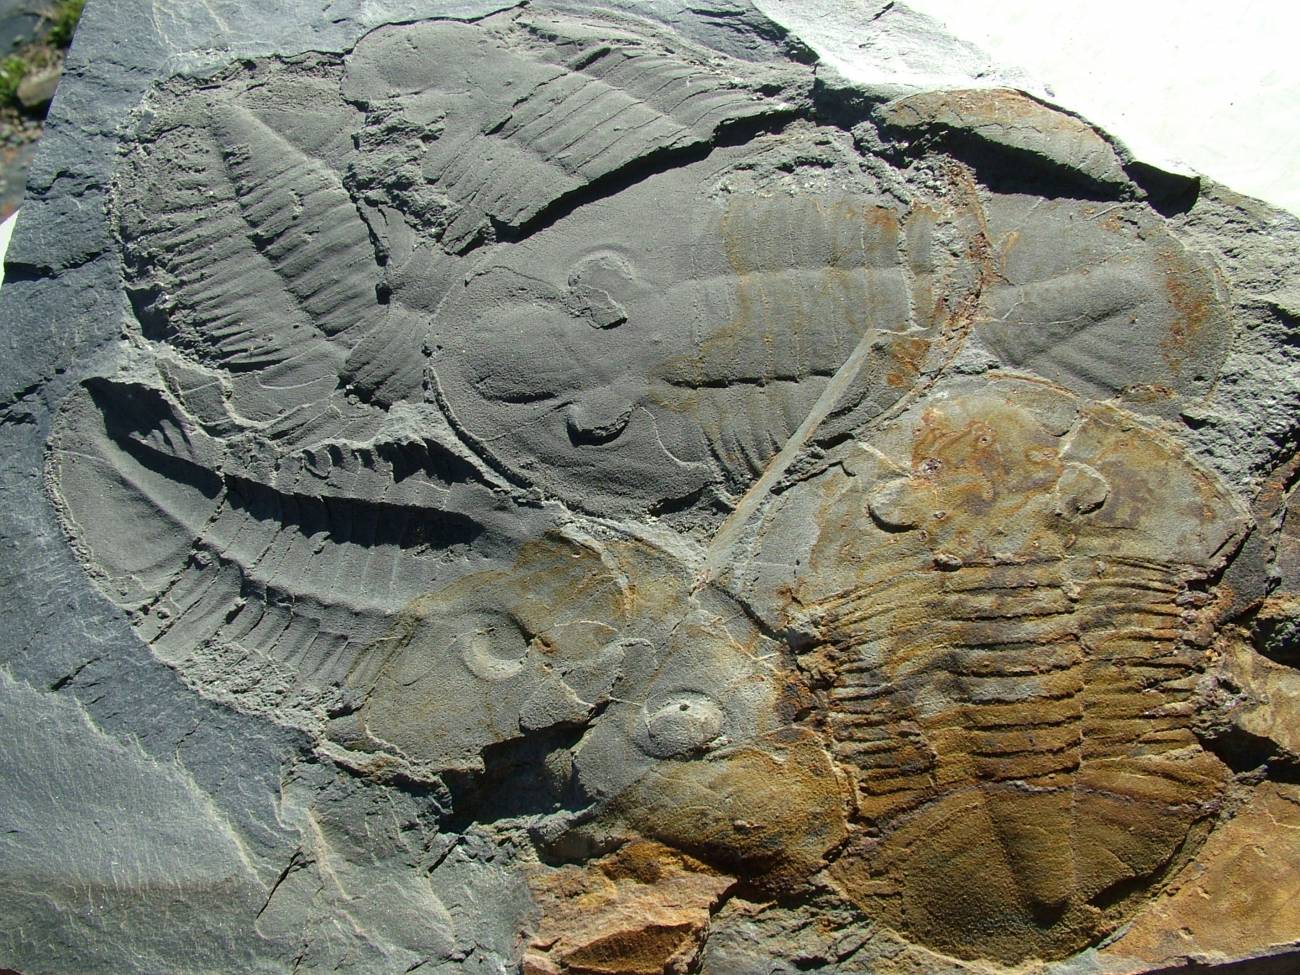  Algunos de los fósiles de trilobites encontrados en Portugal